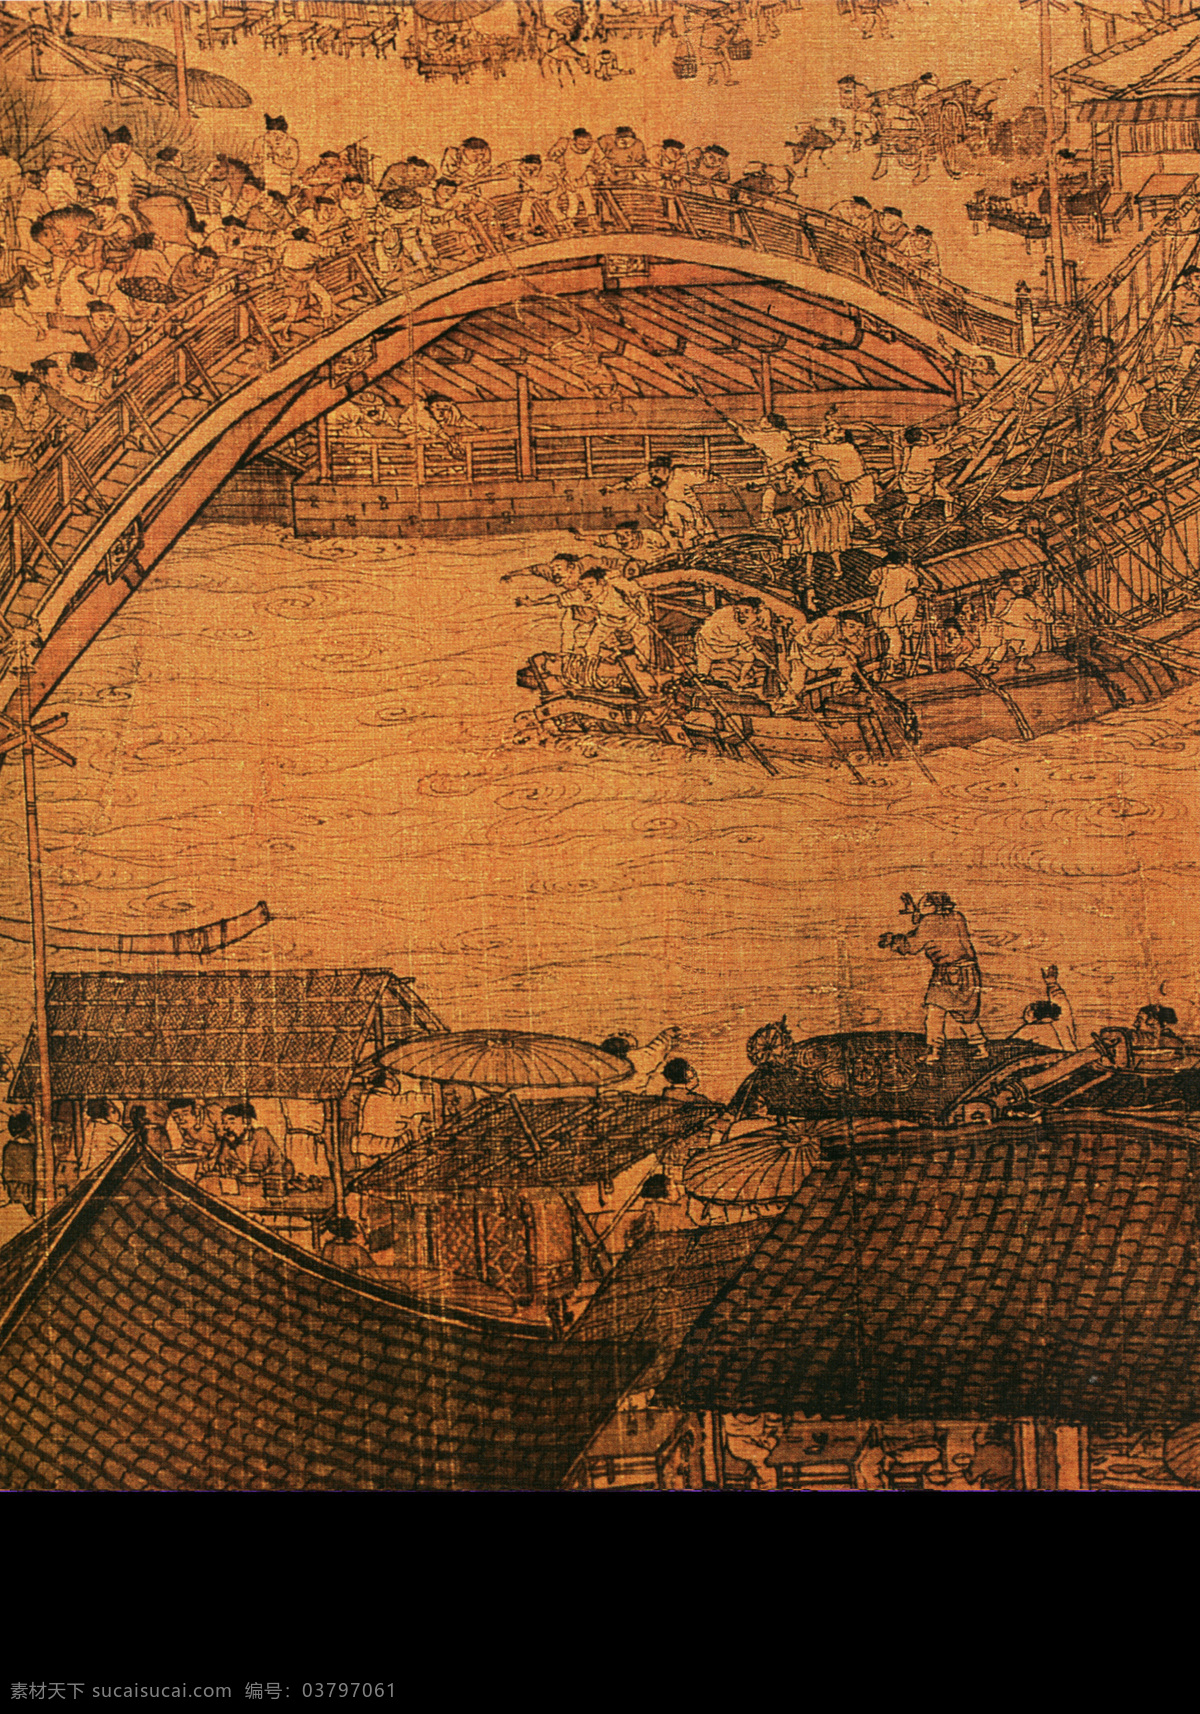 清明上河图d 人物画 中国 古画 中国古画 设计素材 人物名画 古典藏画 书画美术 棕色